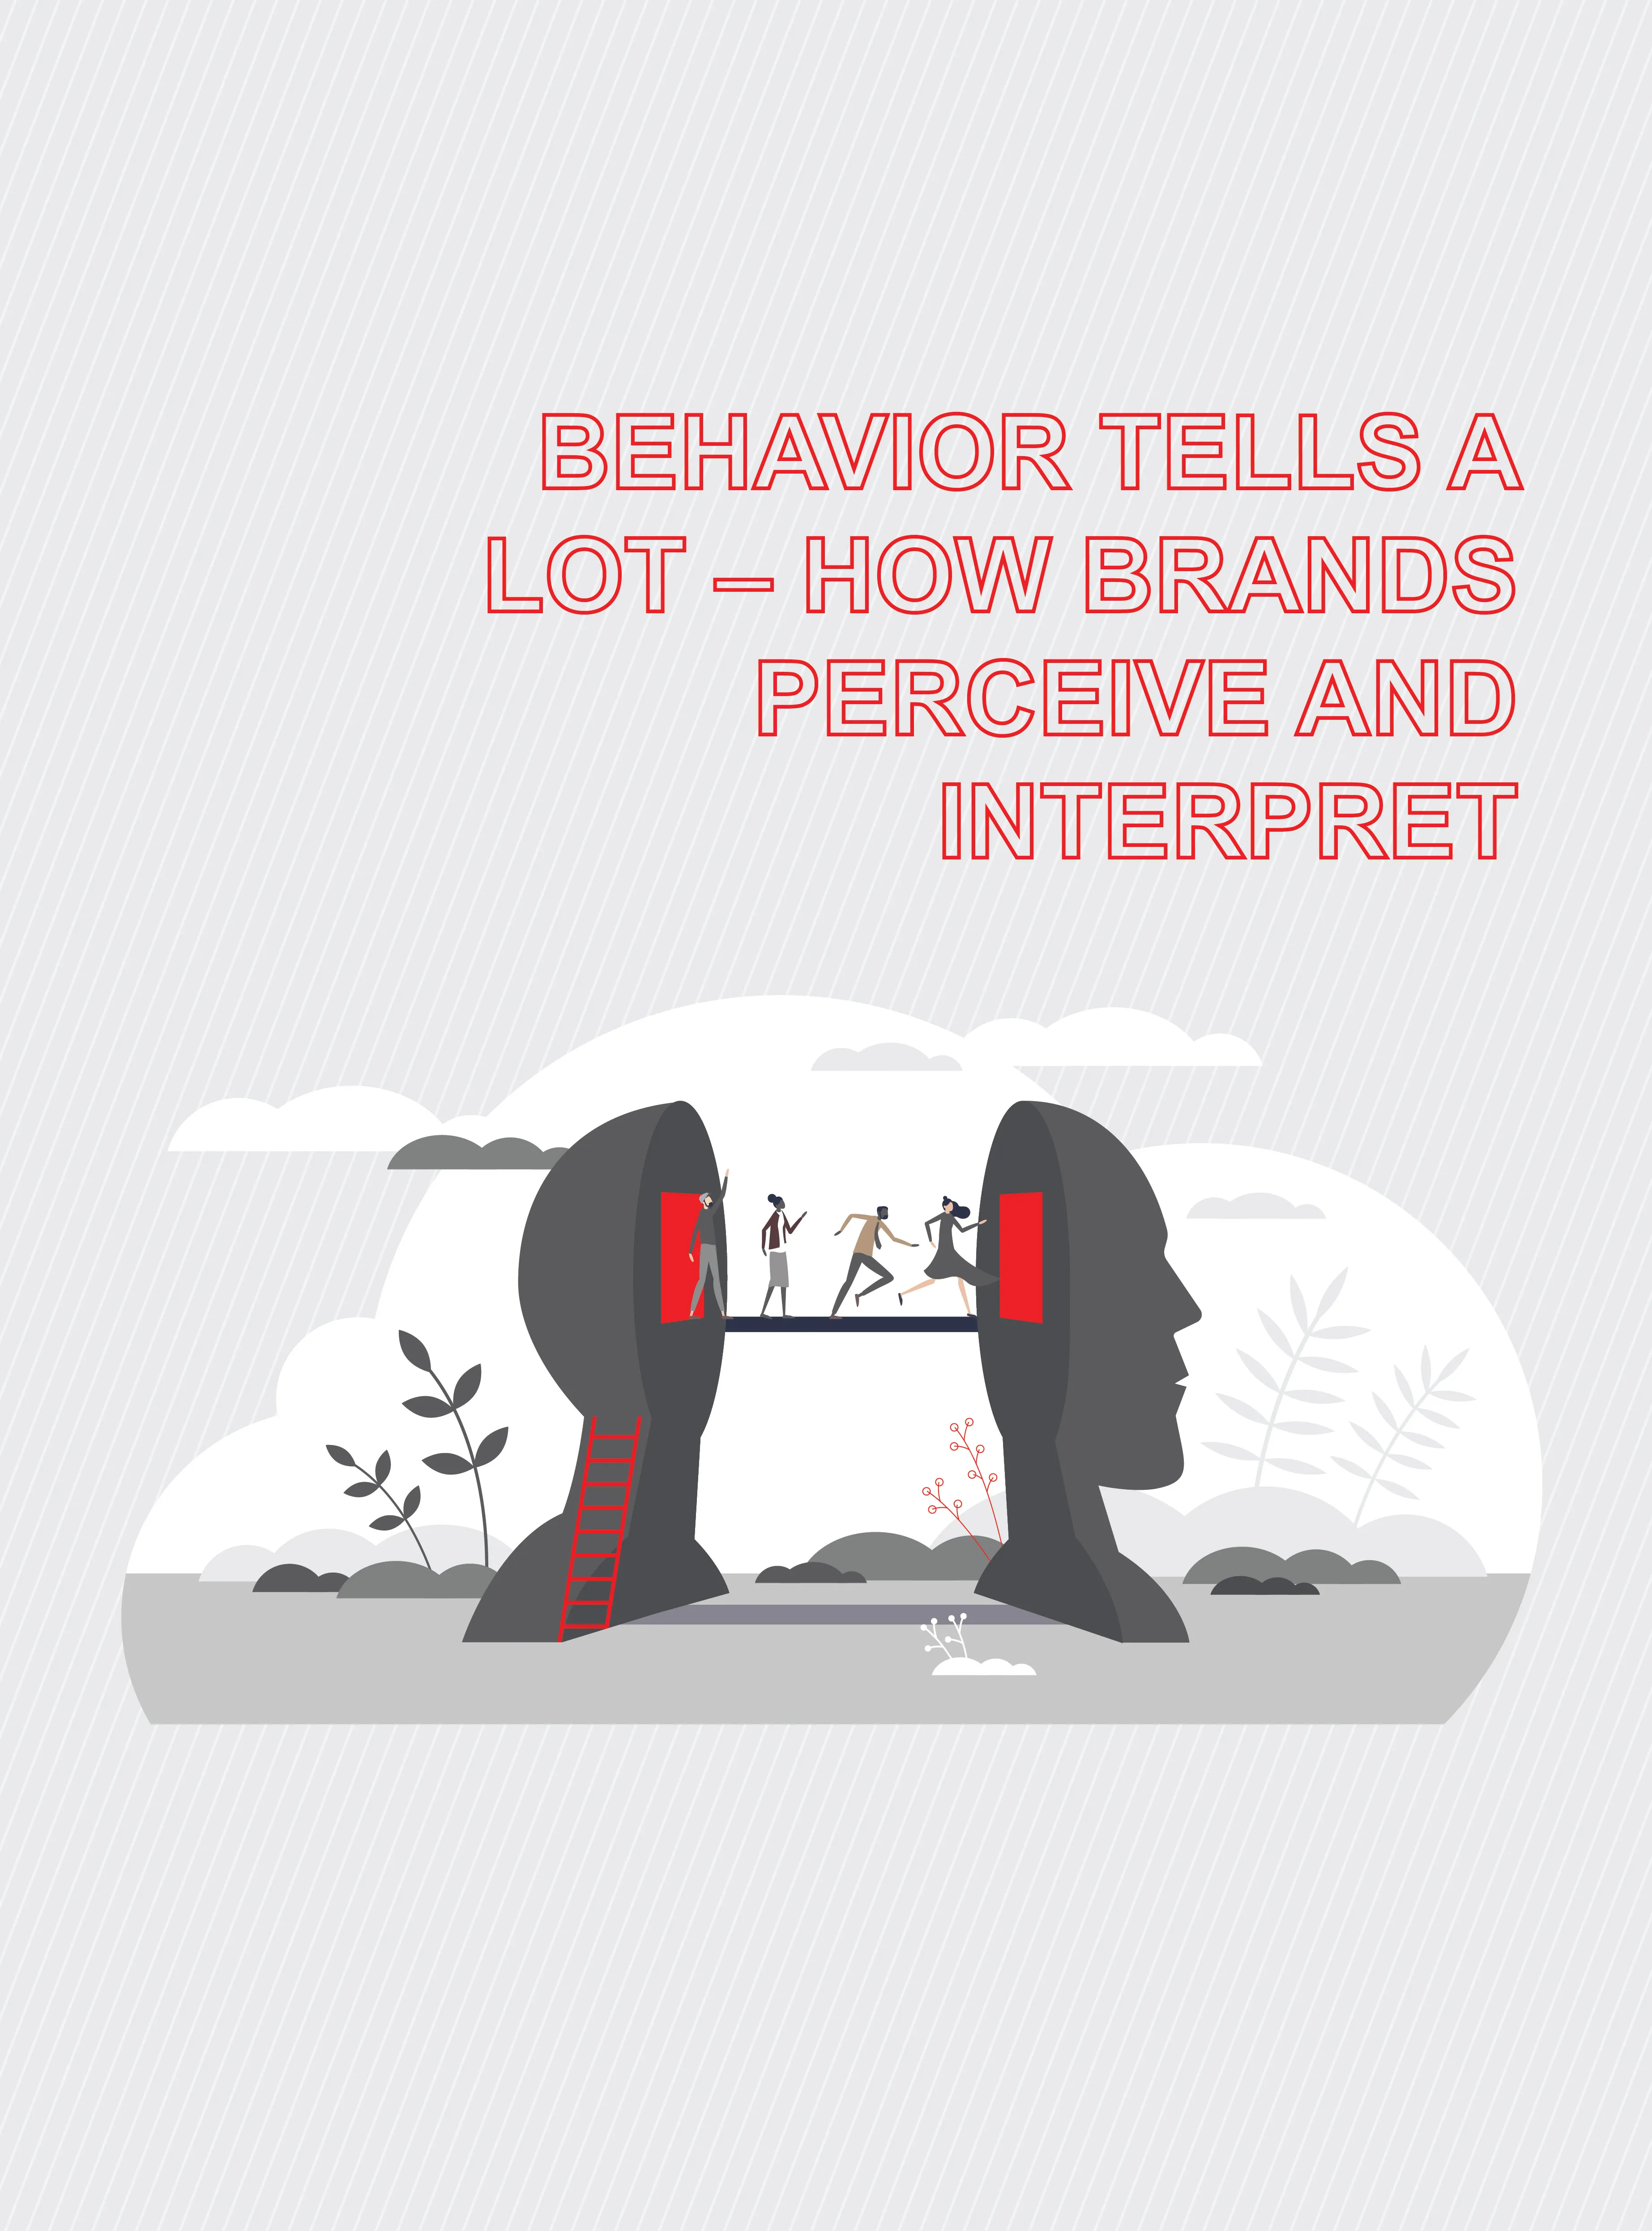 Behavior tells a lot – how brands perceive and interpret